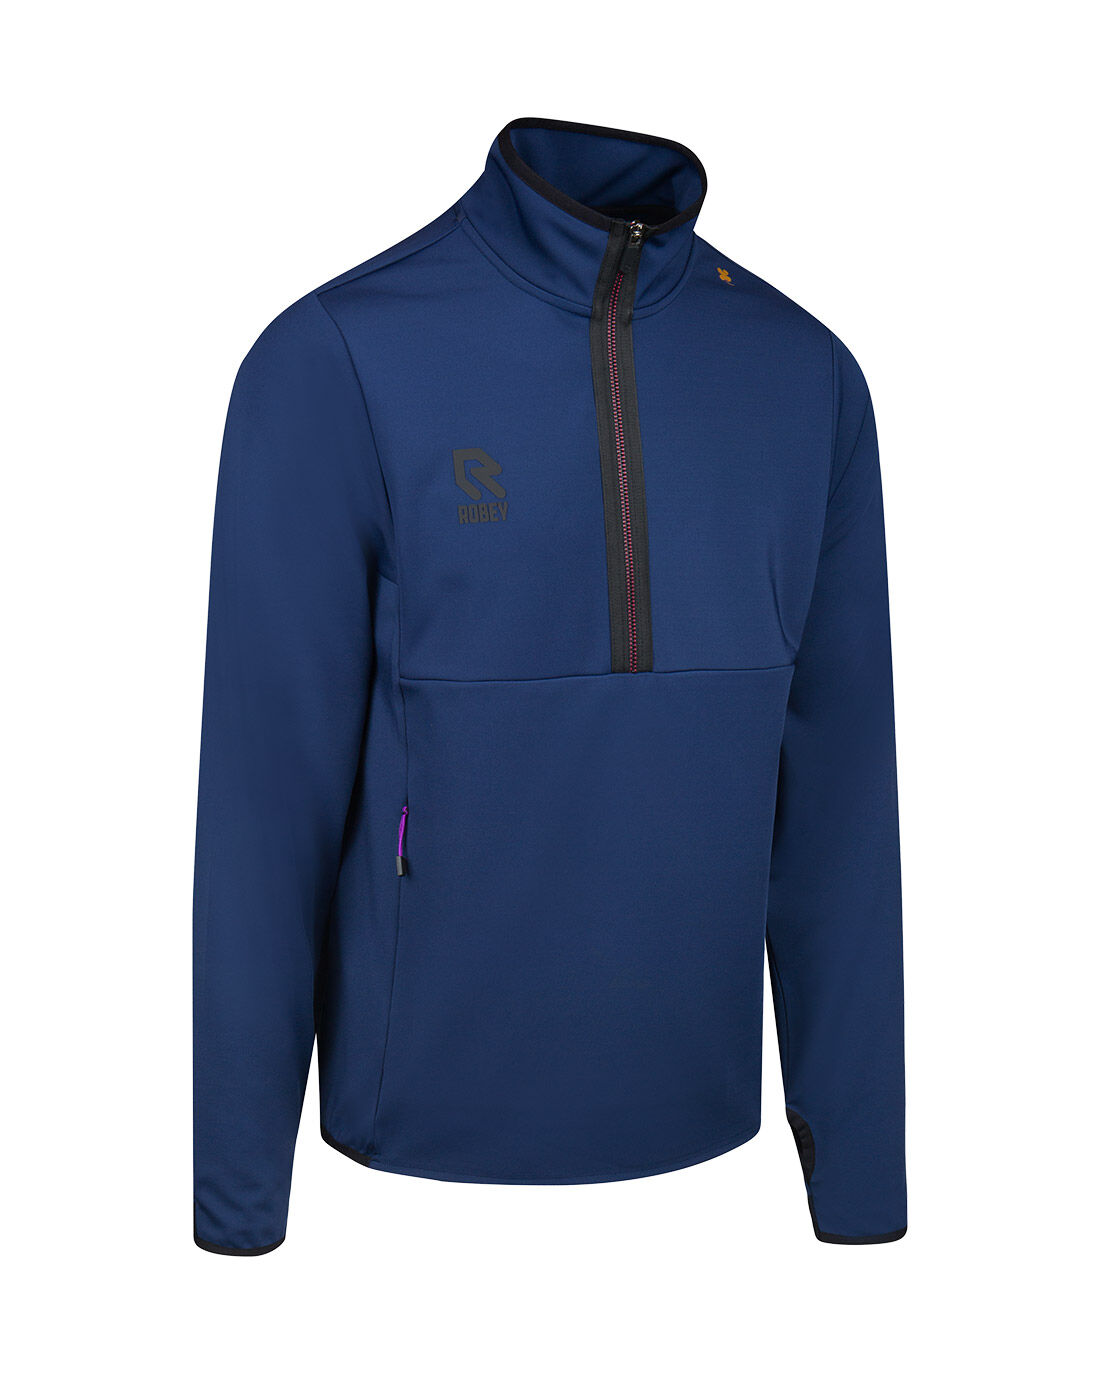 Track jackets | robeysportswear.com